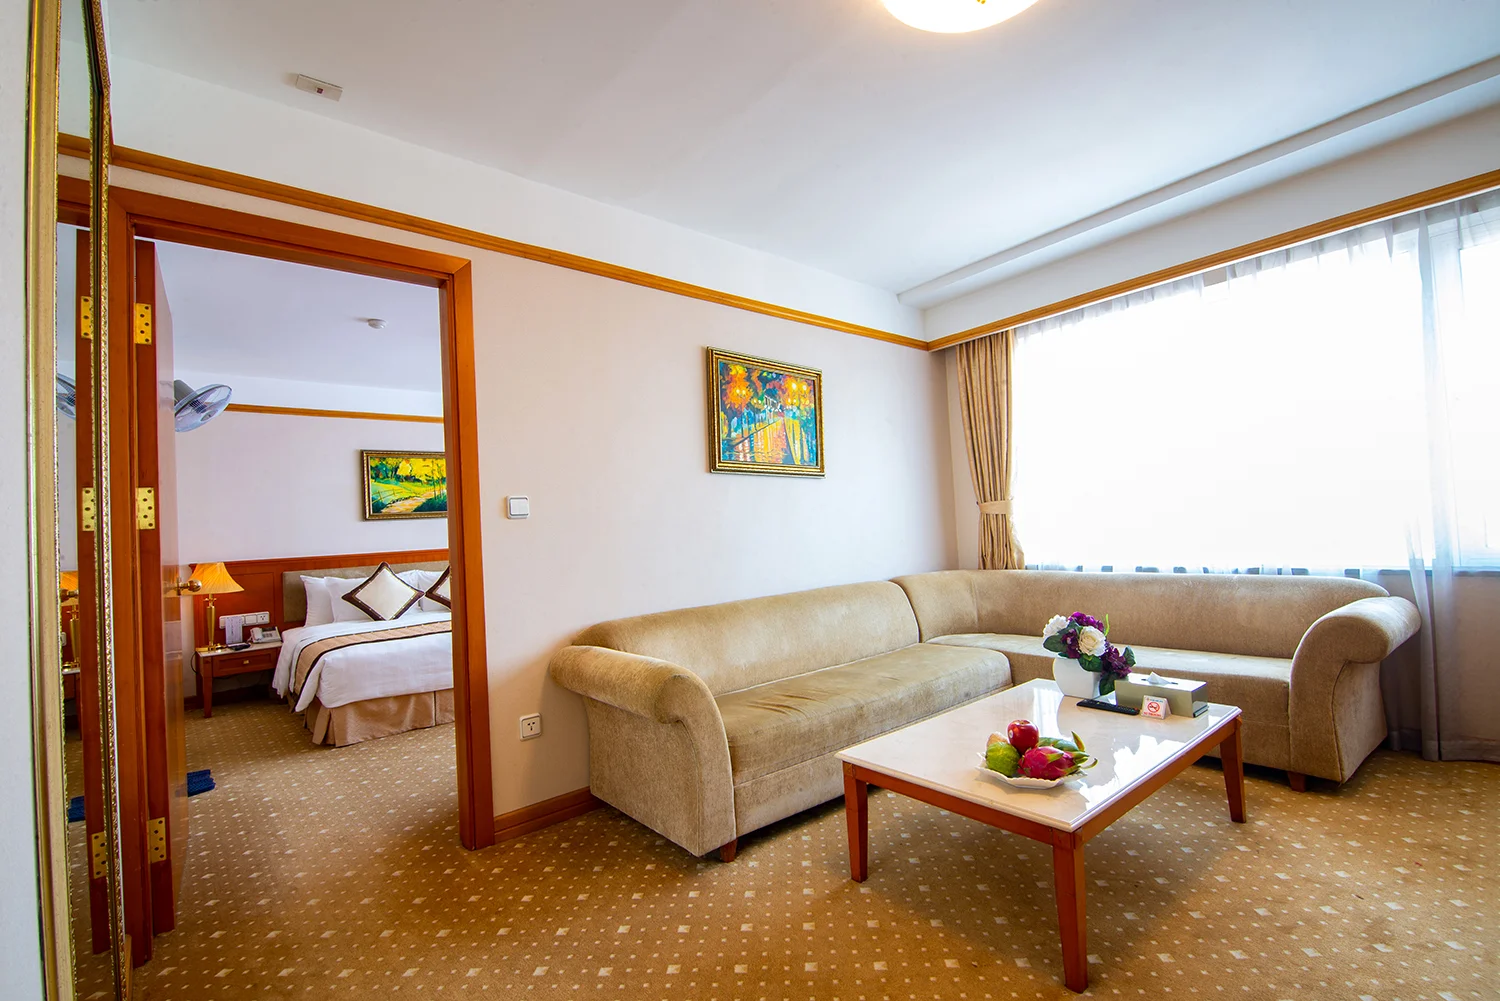 Khách sạn A25 Luxury Hotel - Số 684 Minh Khai Hà Nội